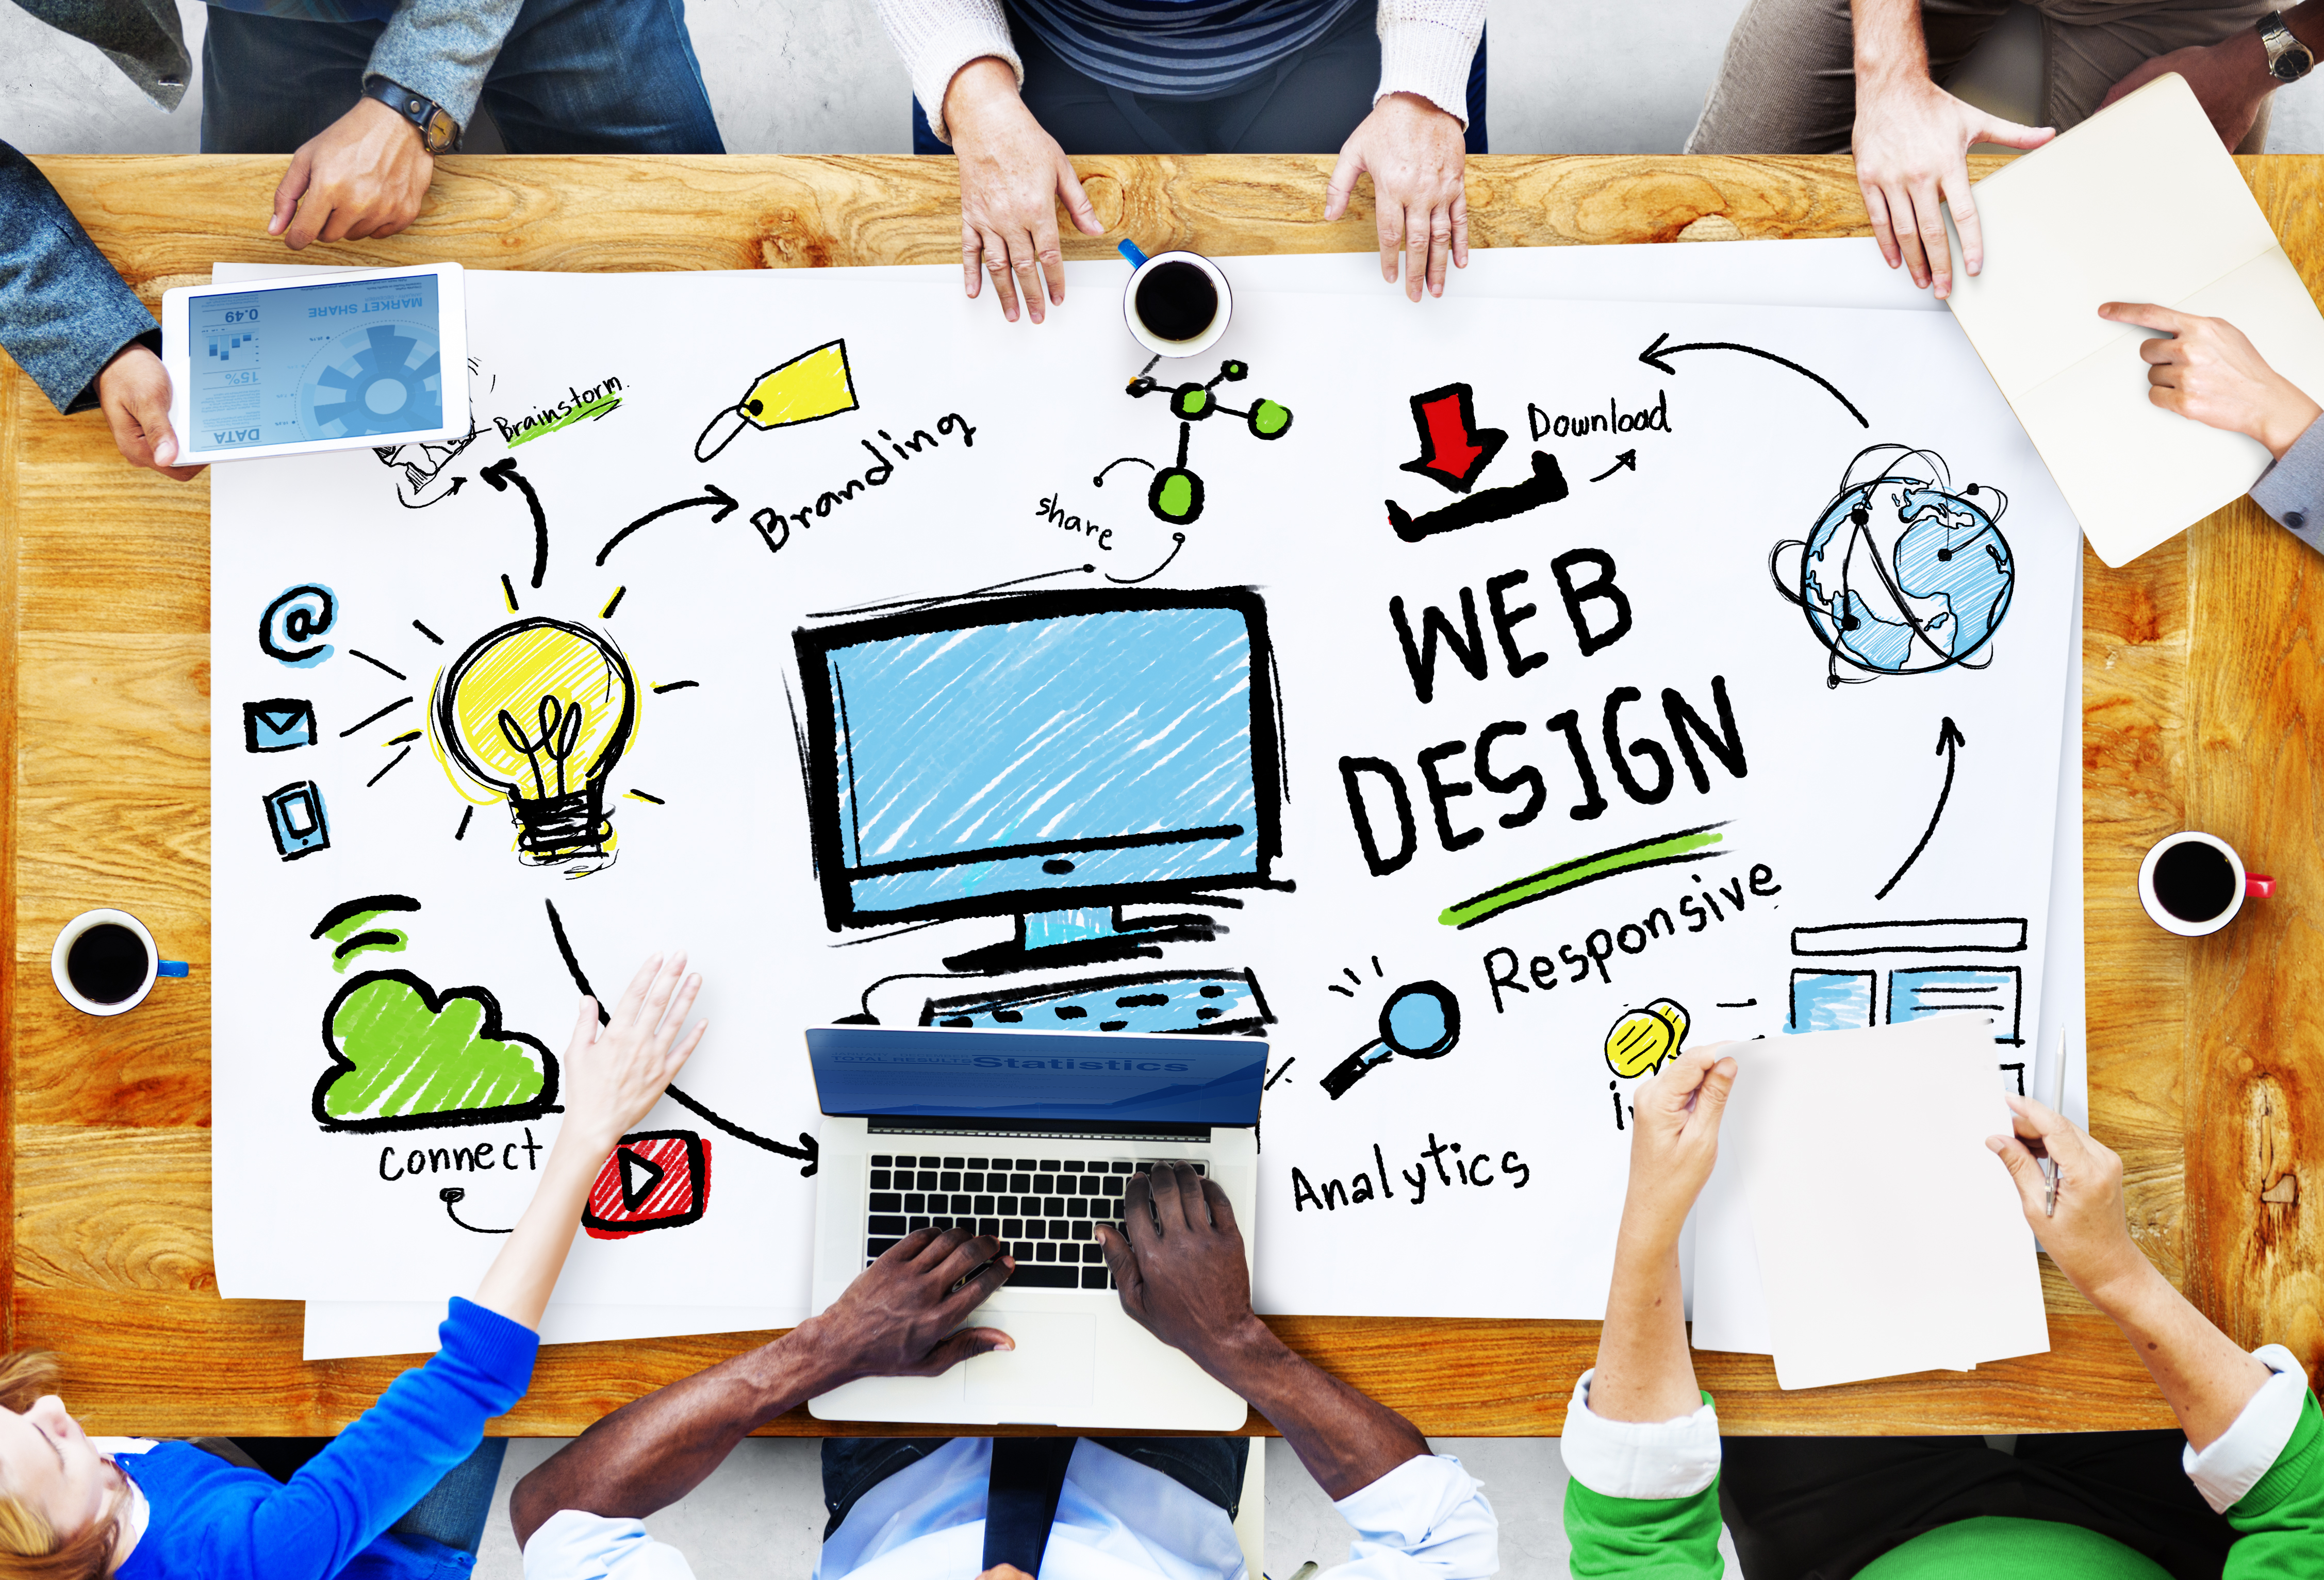 Web design is. Веб дизайнер. Креативный веб дизайнер. Веб-дизайн и разработка. Изображение дизайнера са тов.